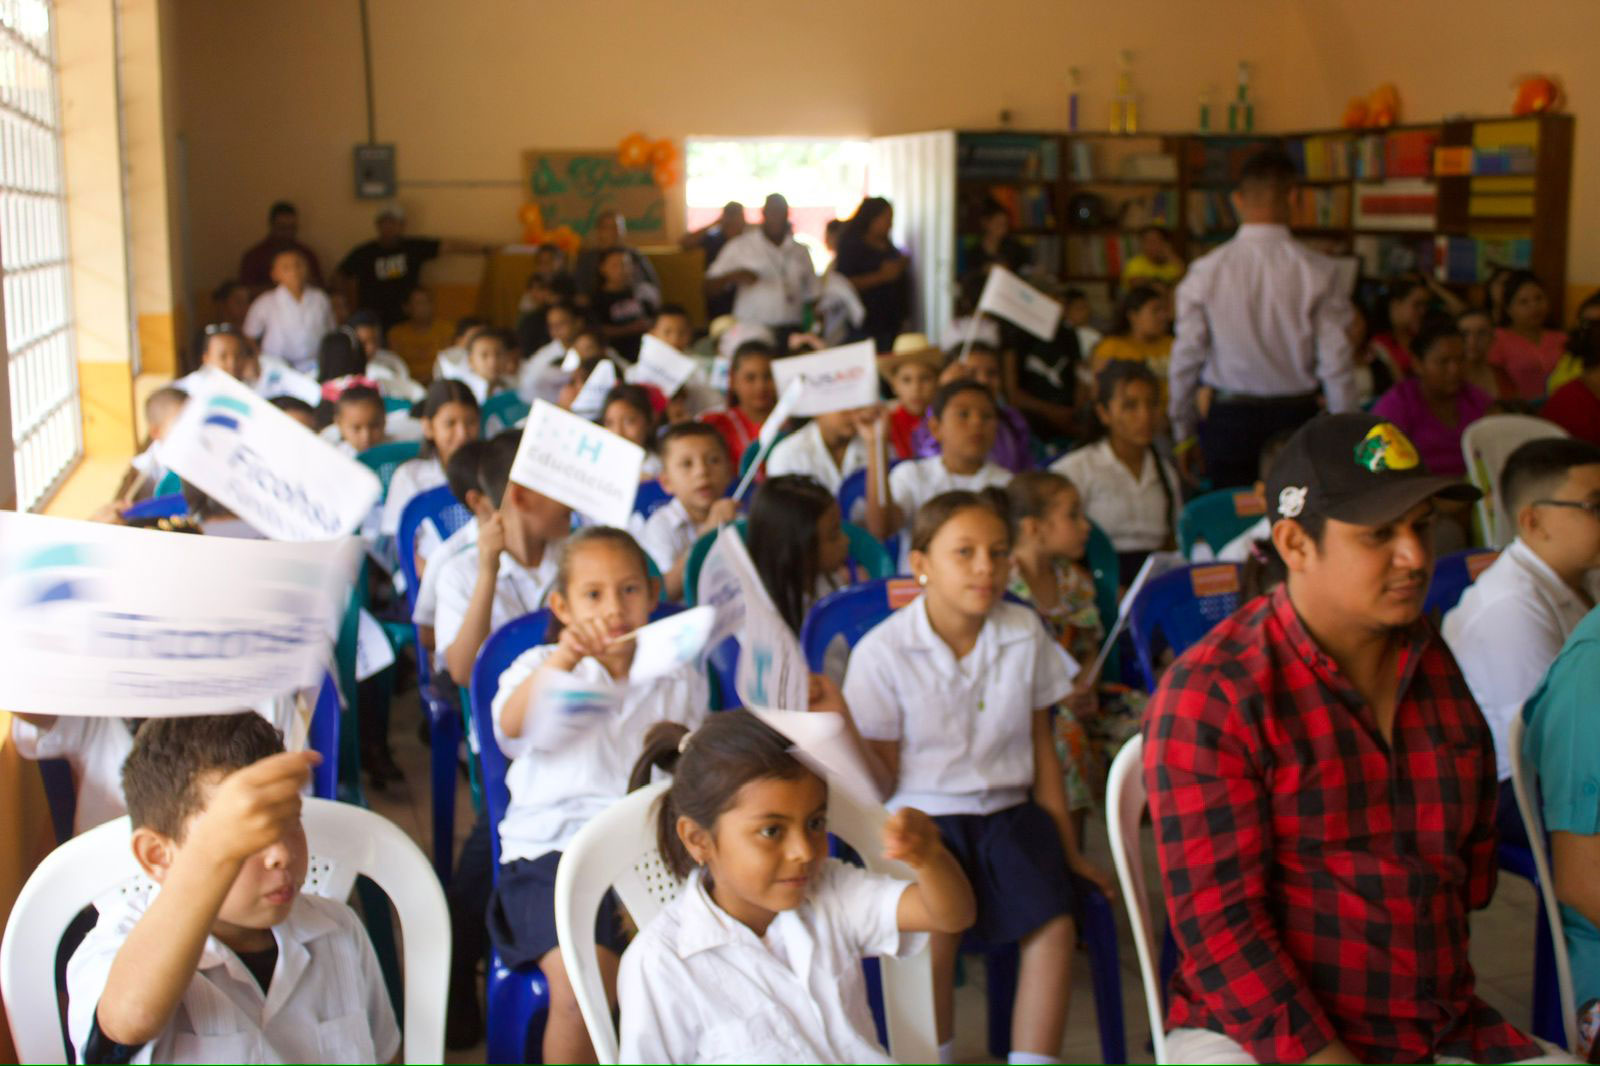 Ficohsa Fundación hace entrega del segundo centro que suman 33 aulas como parte de la “Alianza por la Educación” liderada por USAID